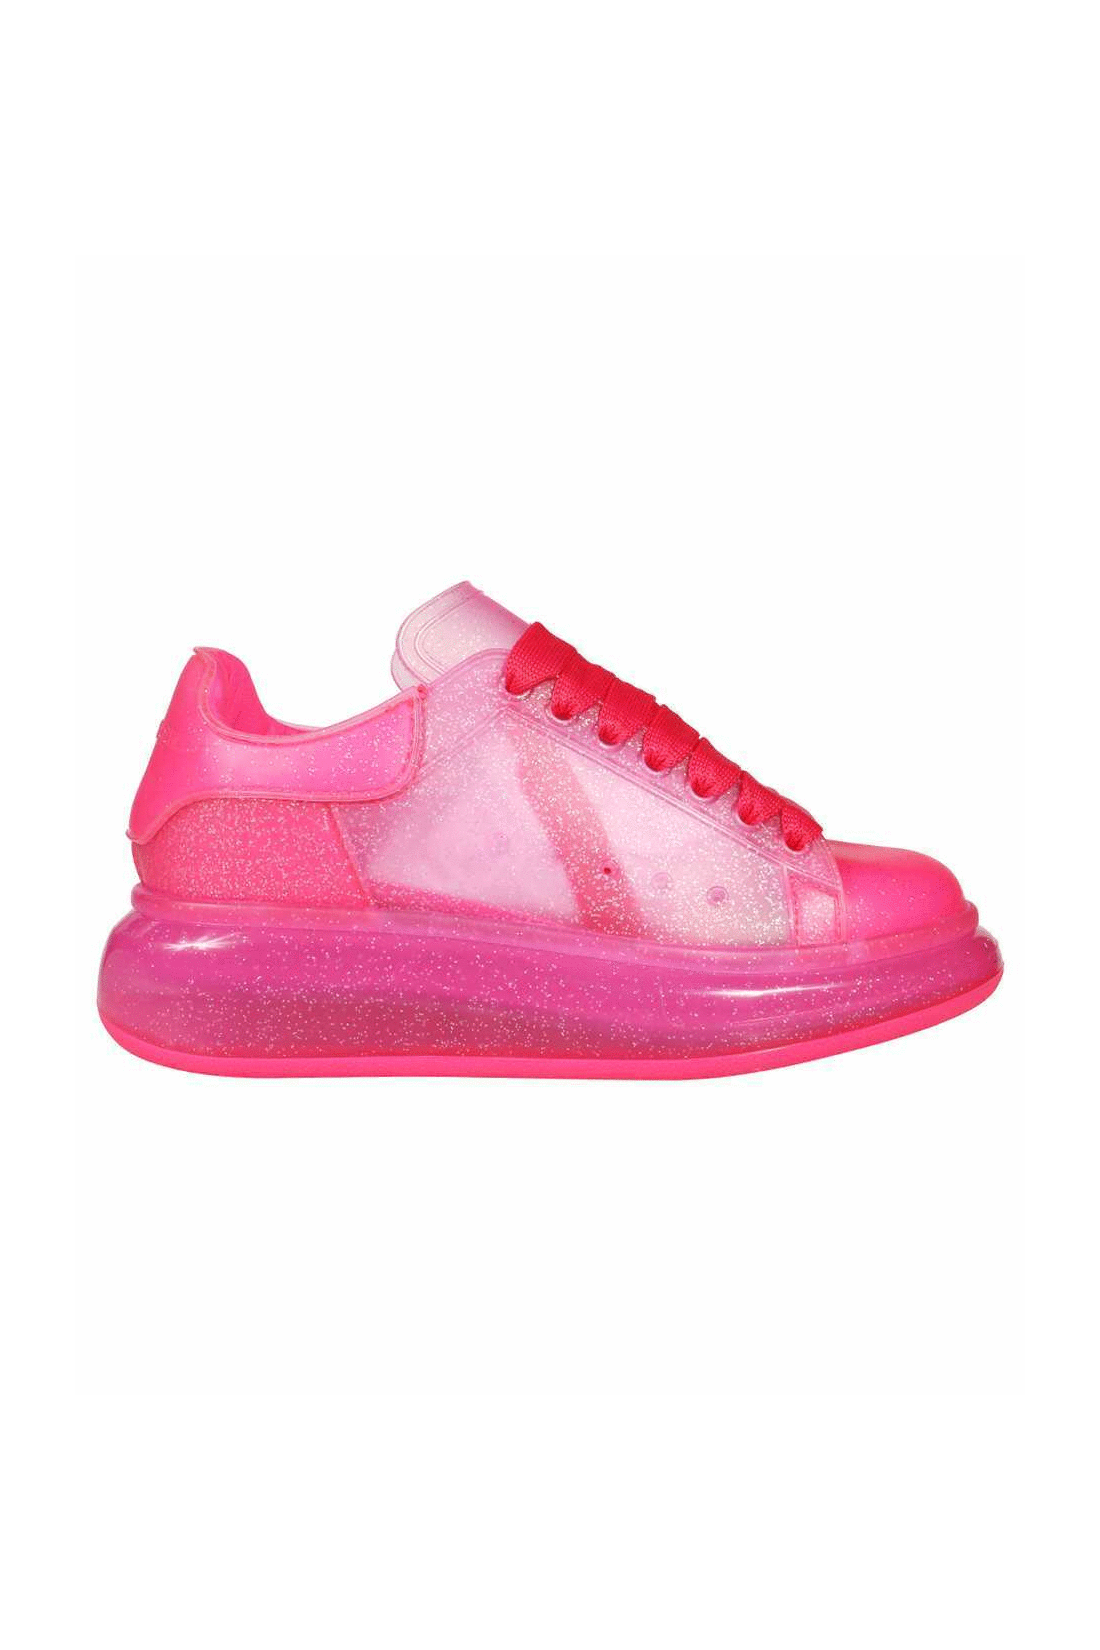 Larry glittery rubber sneakers